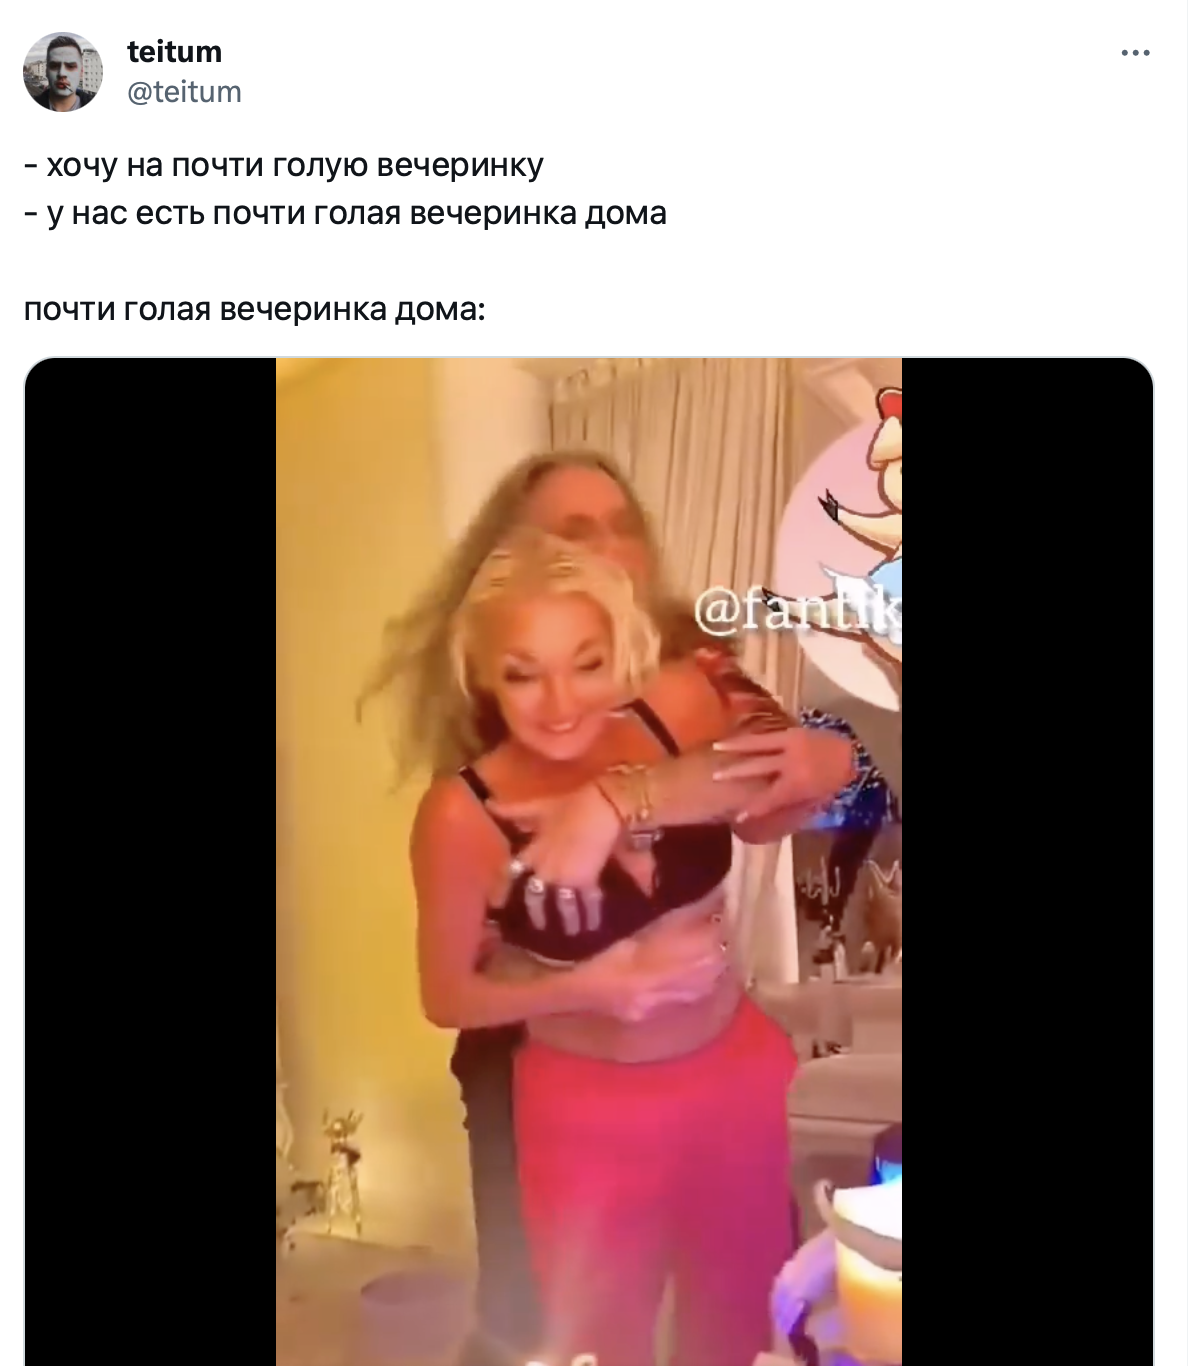 Джигурда и Волочкова устроили пьяные танцы с раздеванием - их высмеяли -  видео | OBOZ.UA